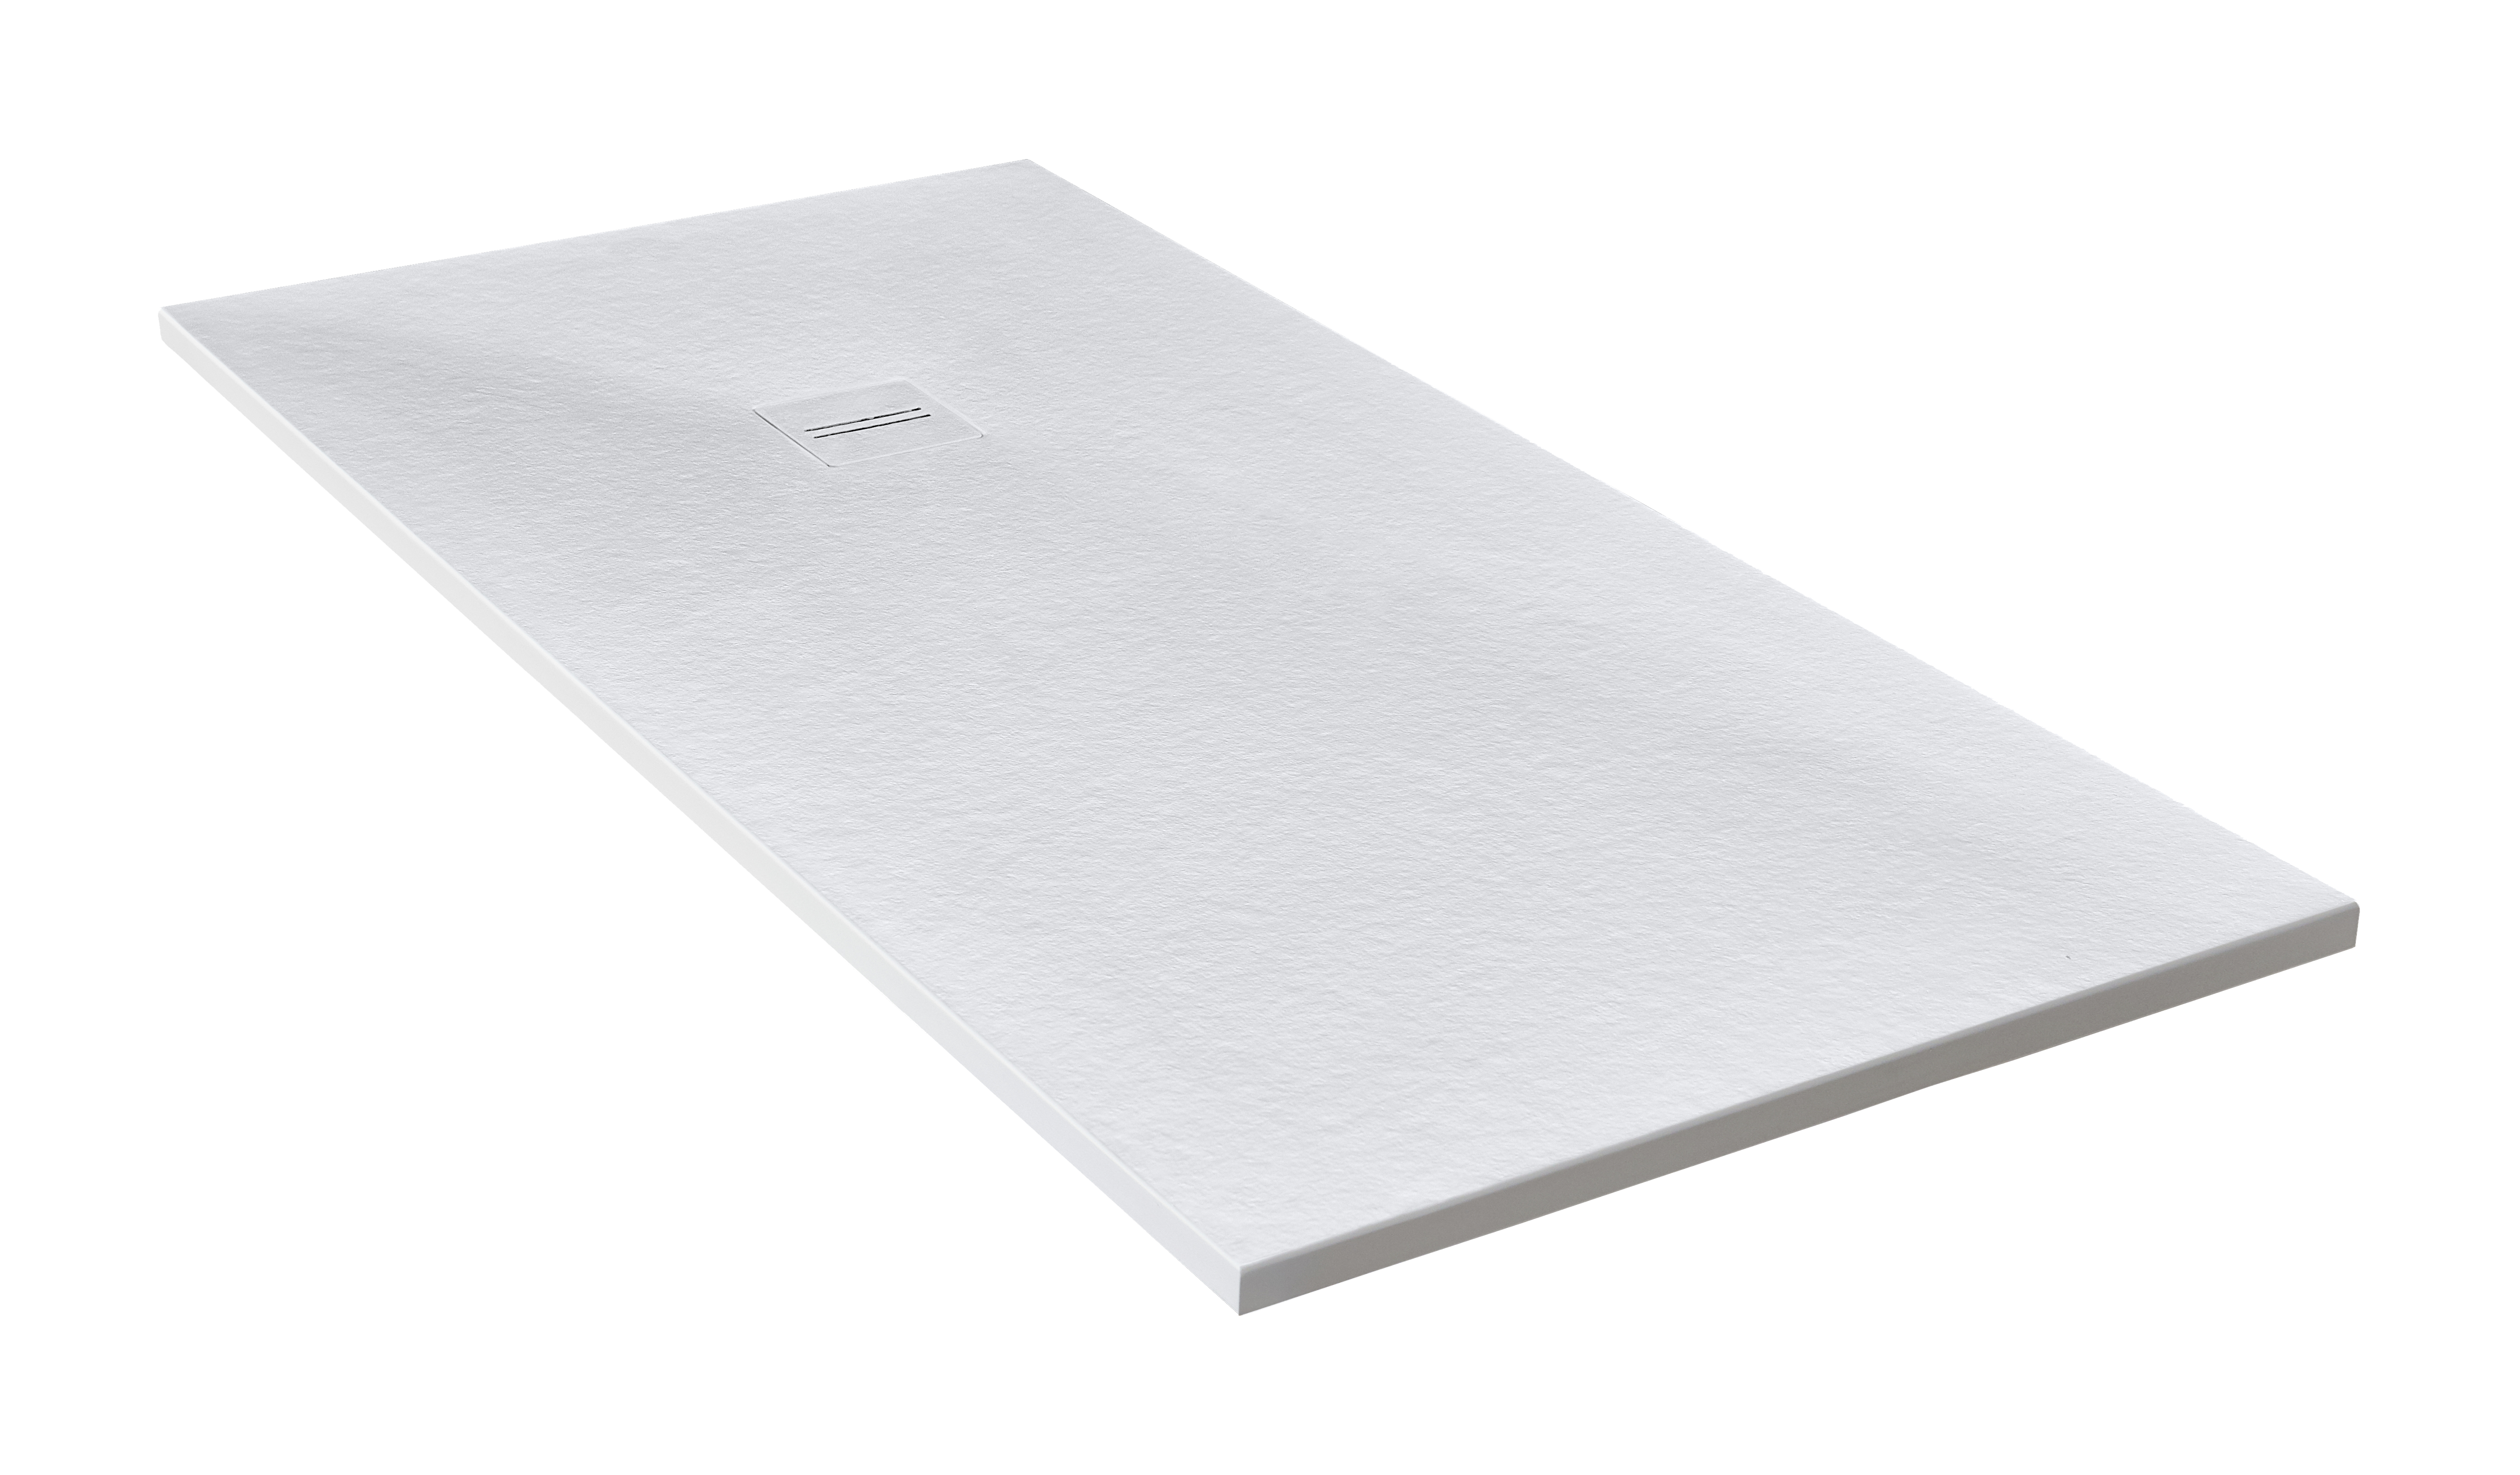 Plato de ducha cosmos 140x80 cm blanco